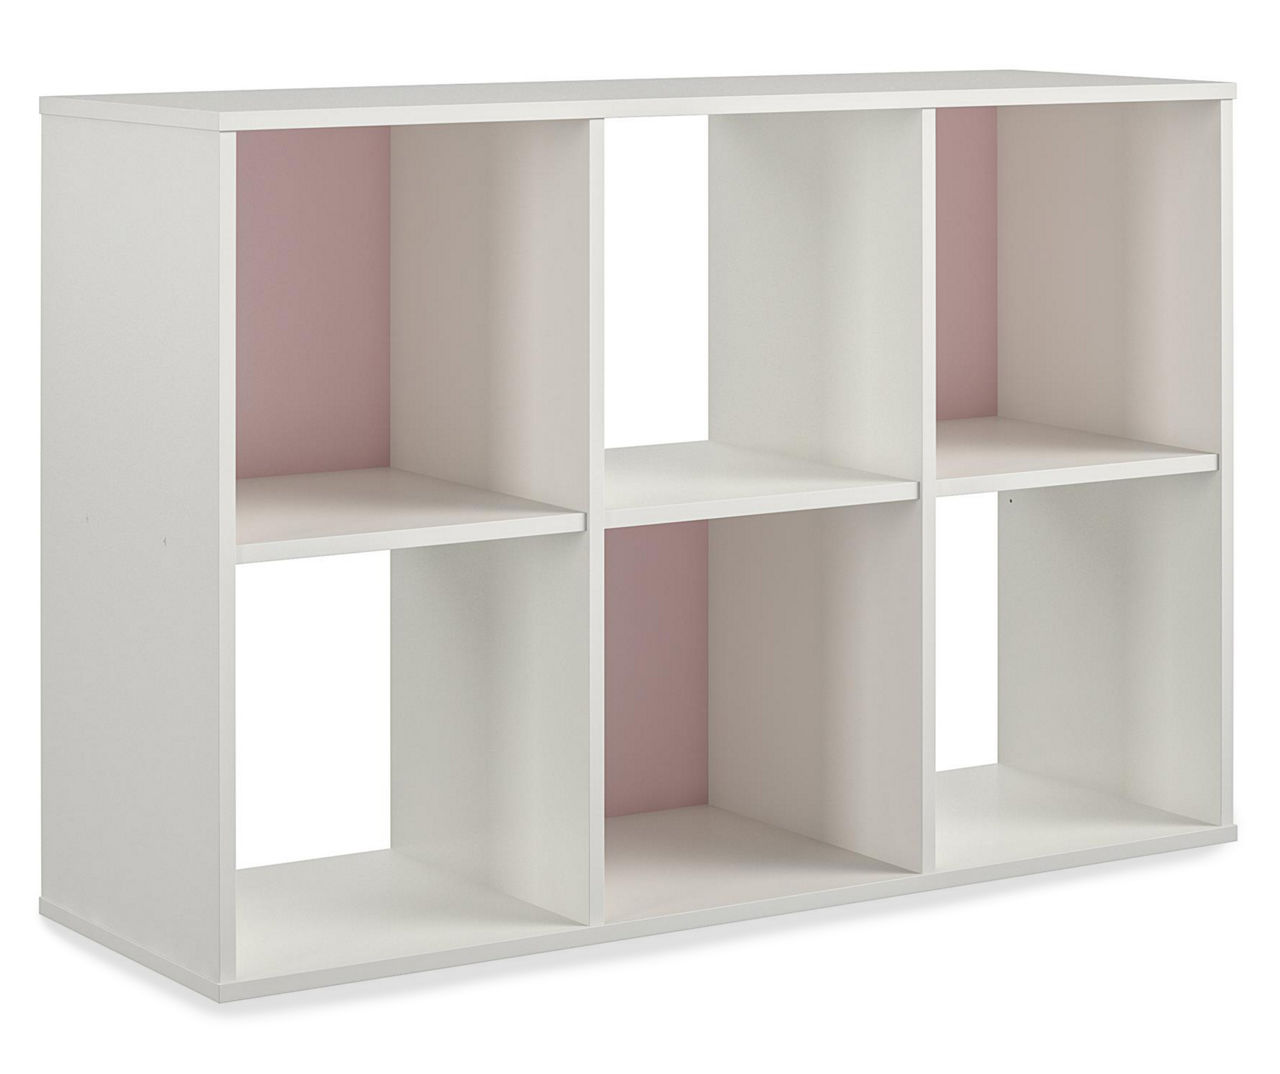 Better Homes & Gardens 6-Cube Storage Organizer, Pink 